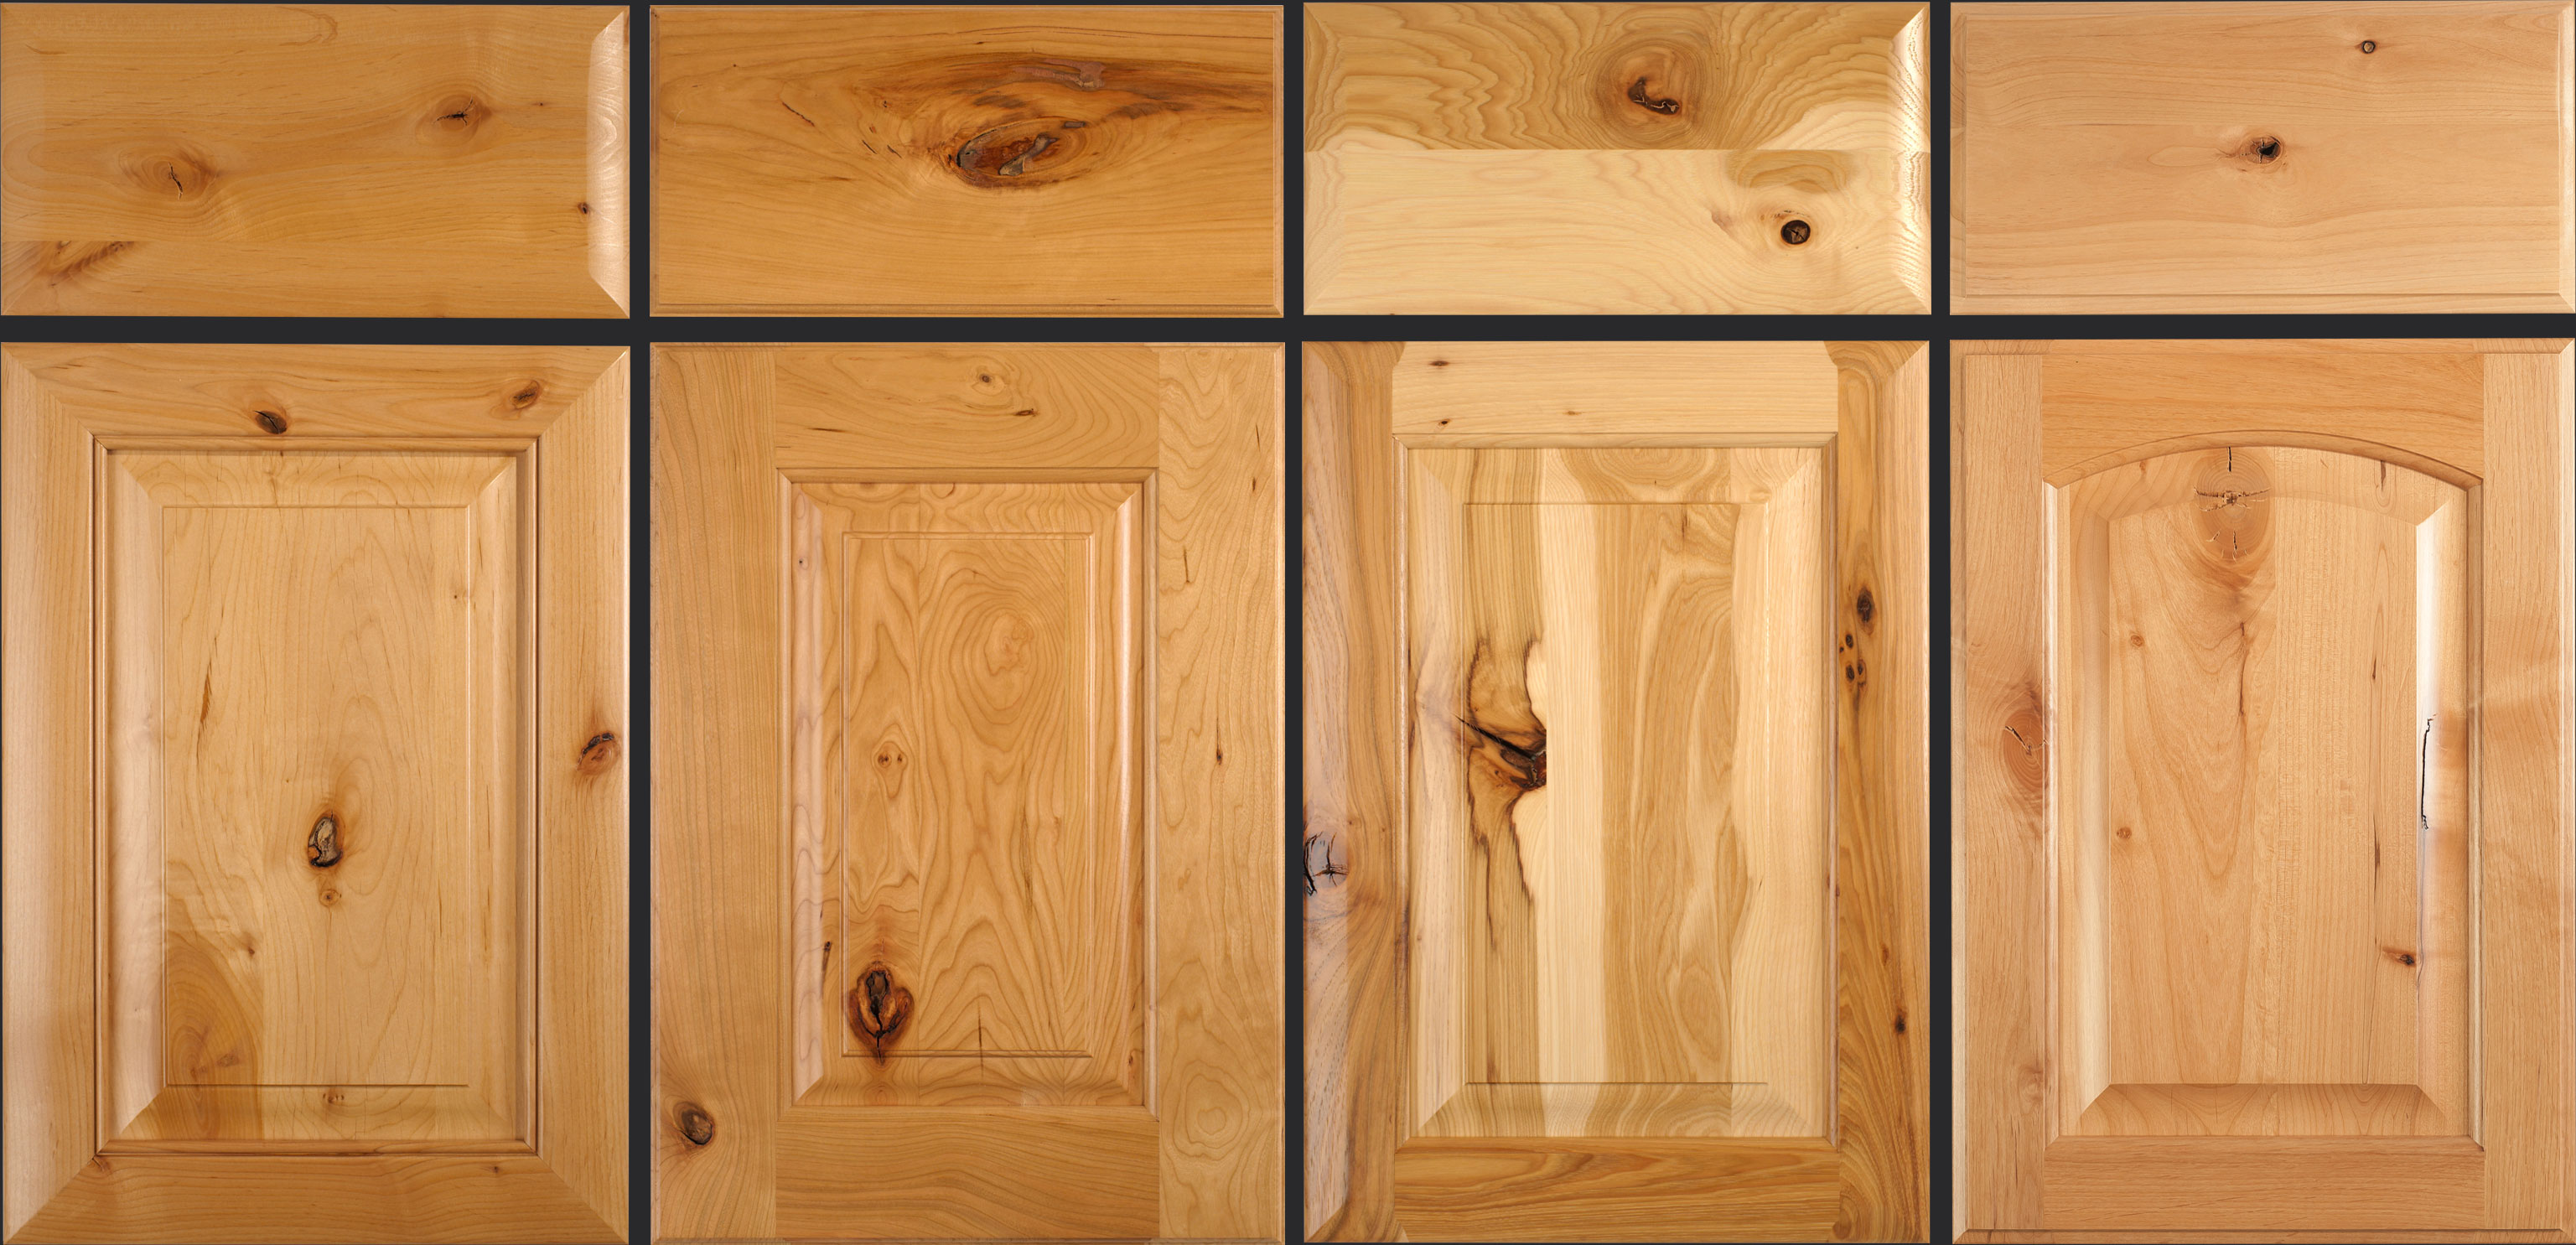 TaylorCraft Cabinet Door Company rustic cabinet doors